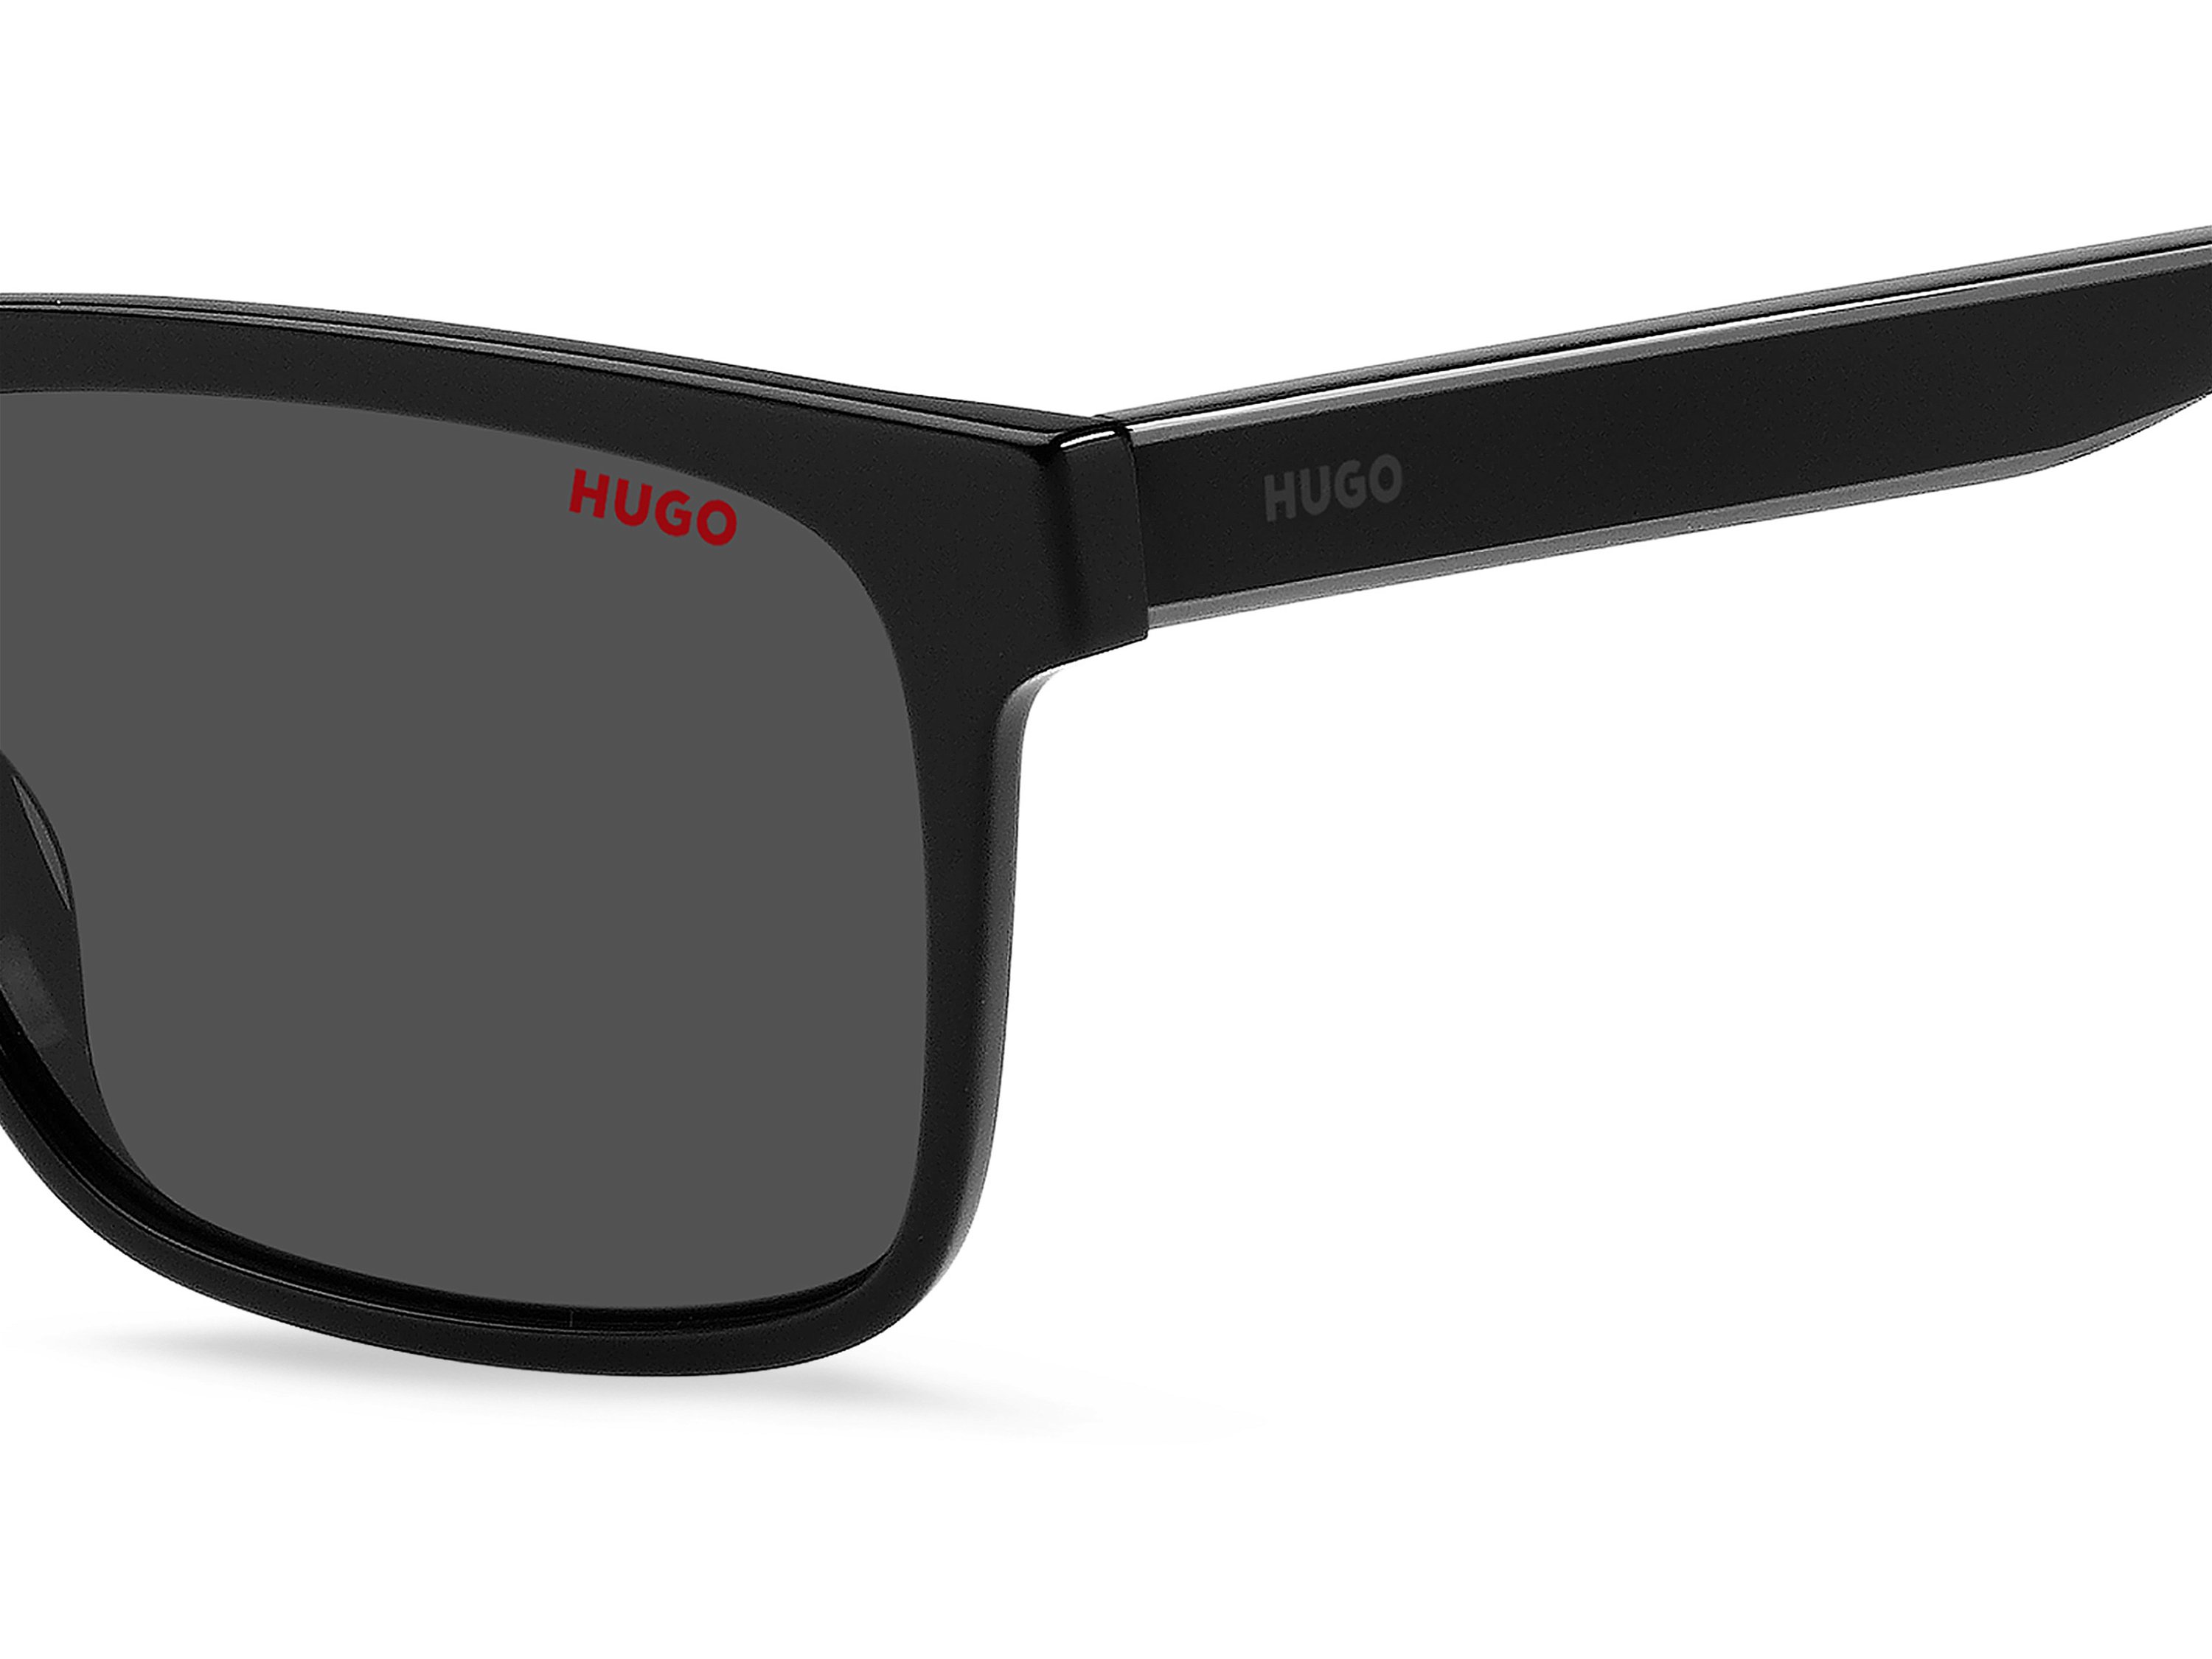 Das Bild zeigt die Sonnenbrille HG1242/S 807 von der Marke Hugo in schwarz.